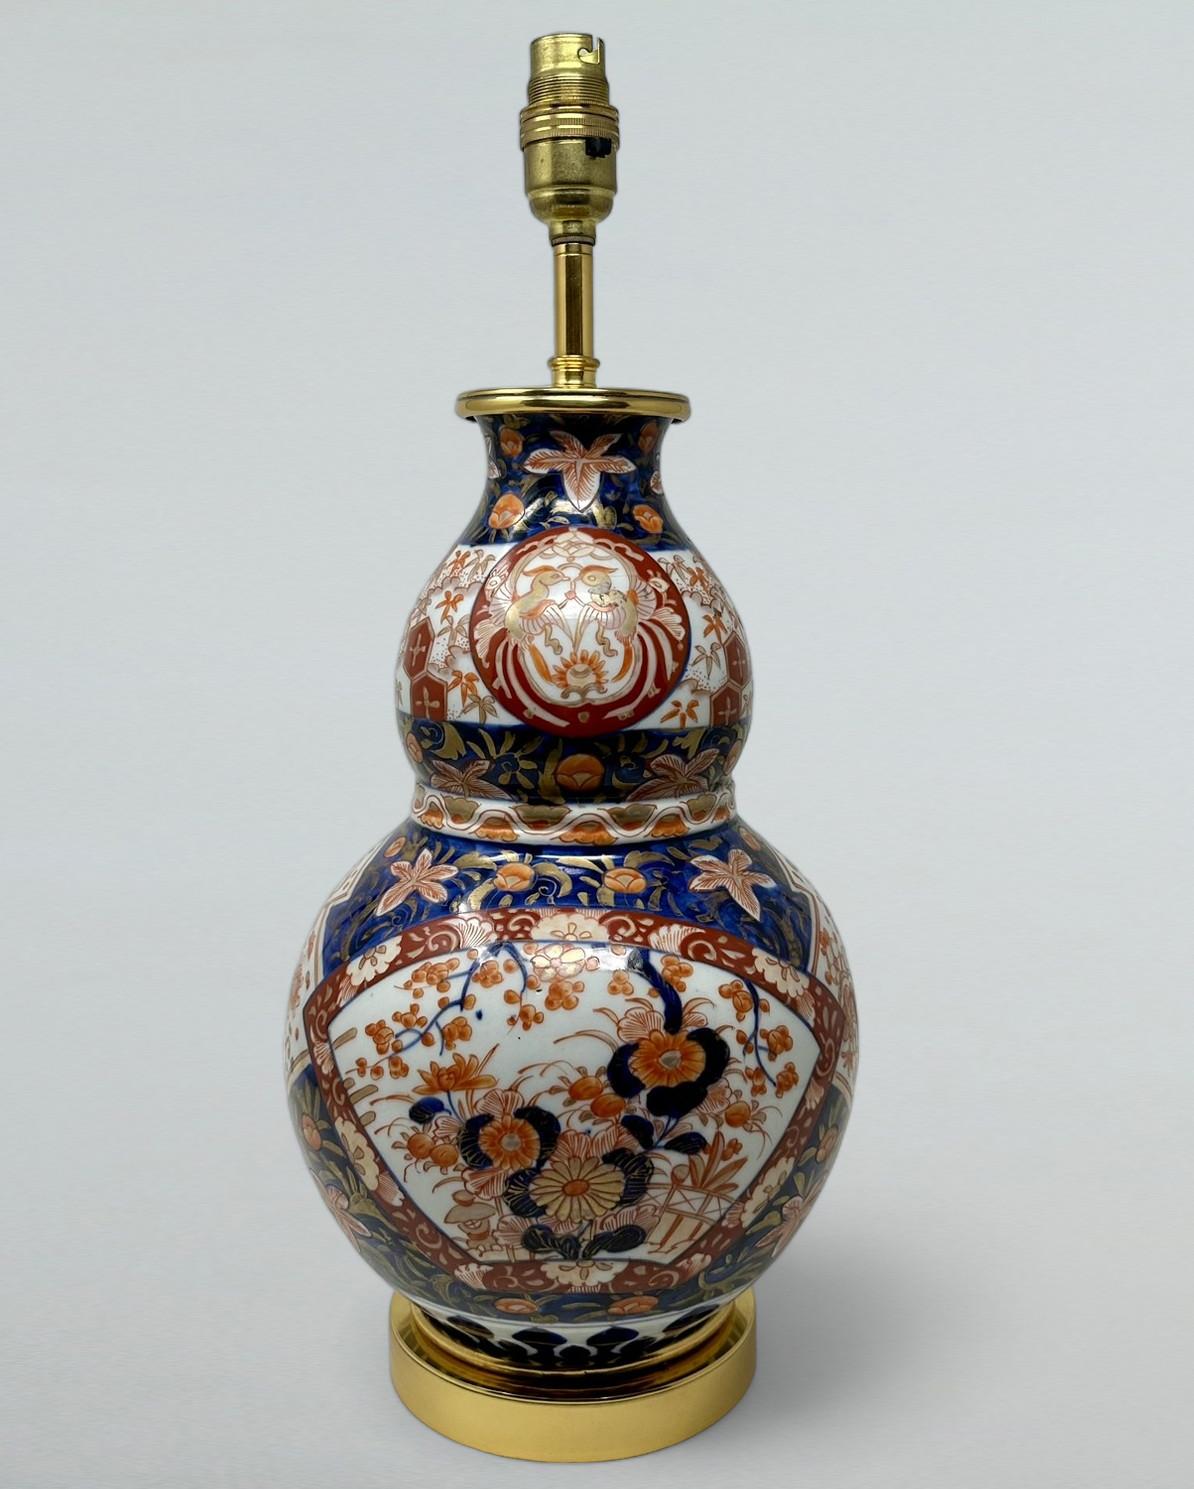 Atemberaubende Traditionelle japanische Imari Hand dekoriert Porzellan Vase von selten gesehenen Doppel-Kürbis Form glasiert Porzellan, von großzügigen Proportionen, jetzt zu einer elektrischen Tischlampe, komplett mit späteren plain schweren Ormolu